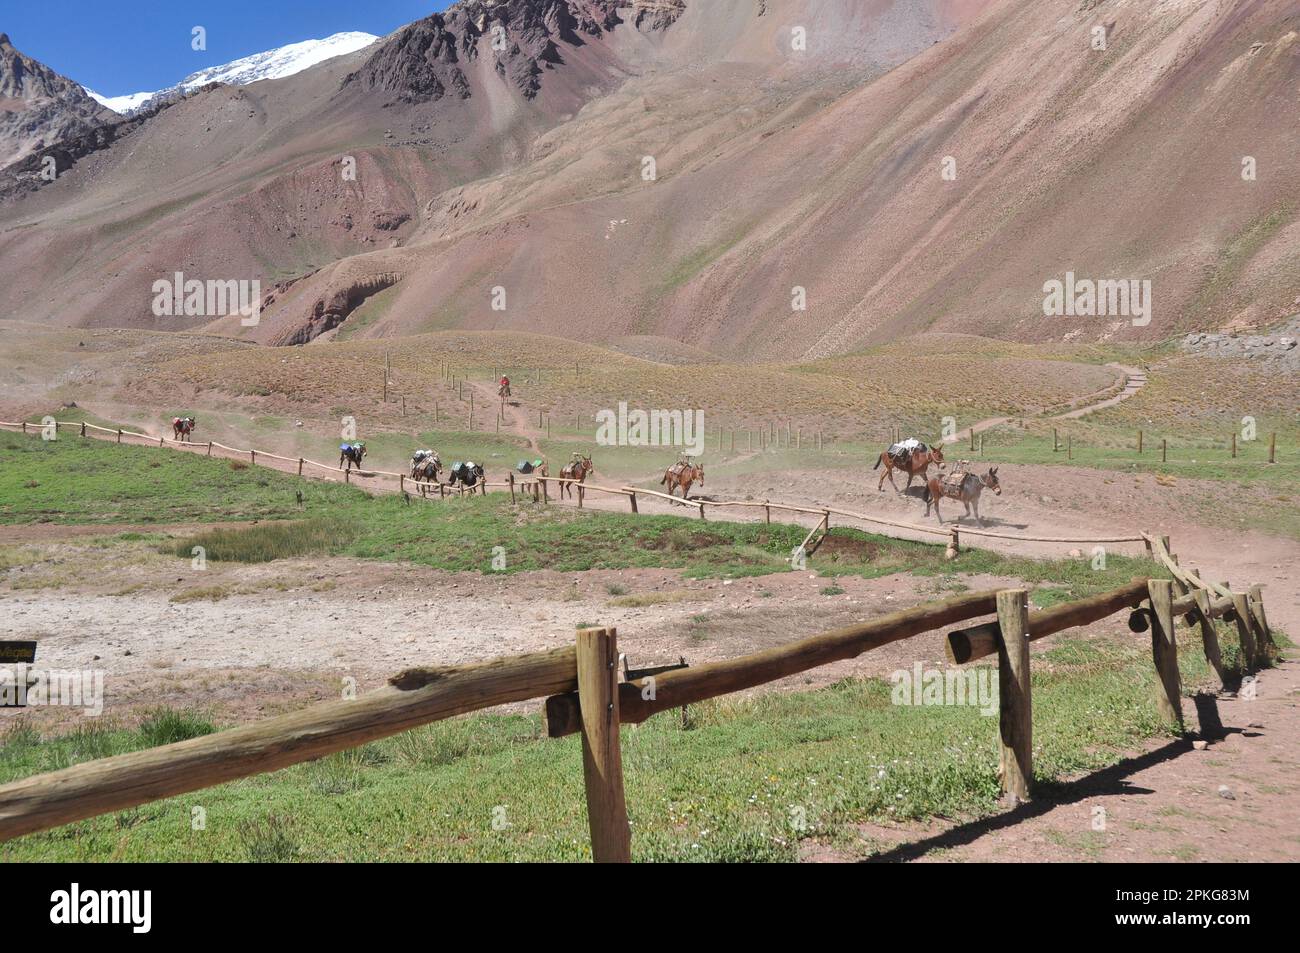 Mulas volviendo despues de una jornada de trabajo, Parque Provicnial Aconcagua, Mendoza, Argentina Stock Photo